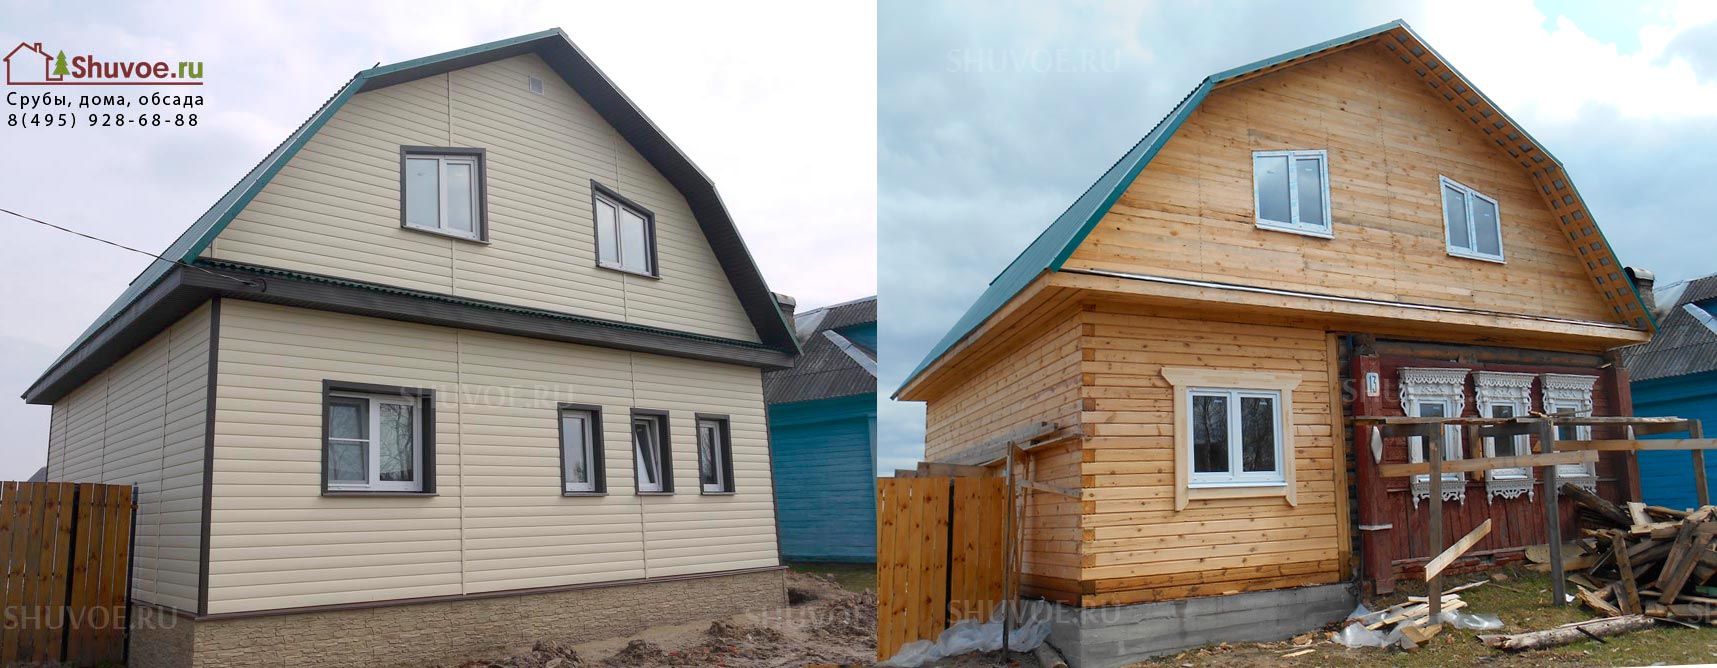 Пристройка к деревянному дому до и после